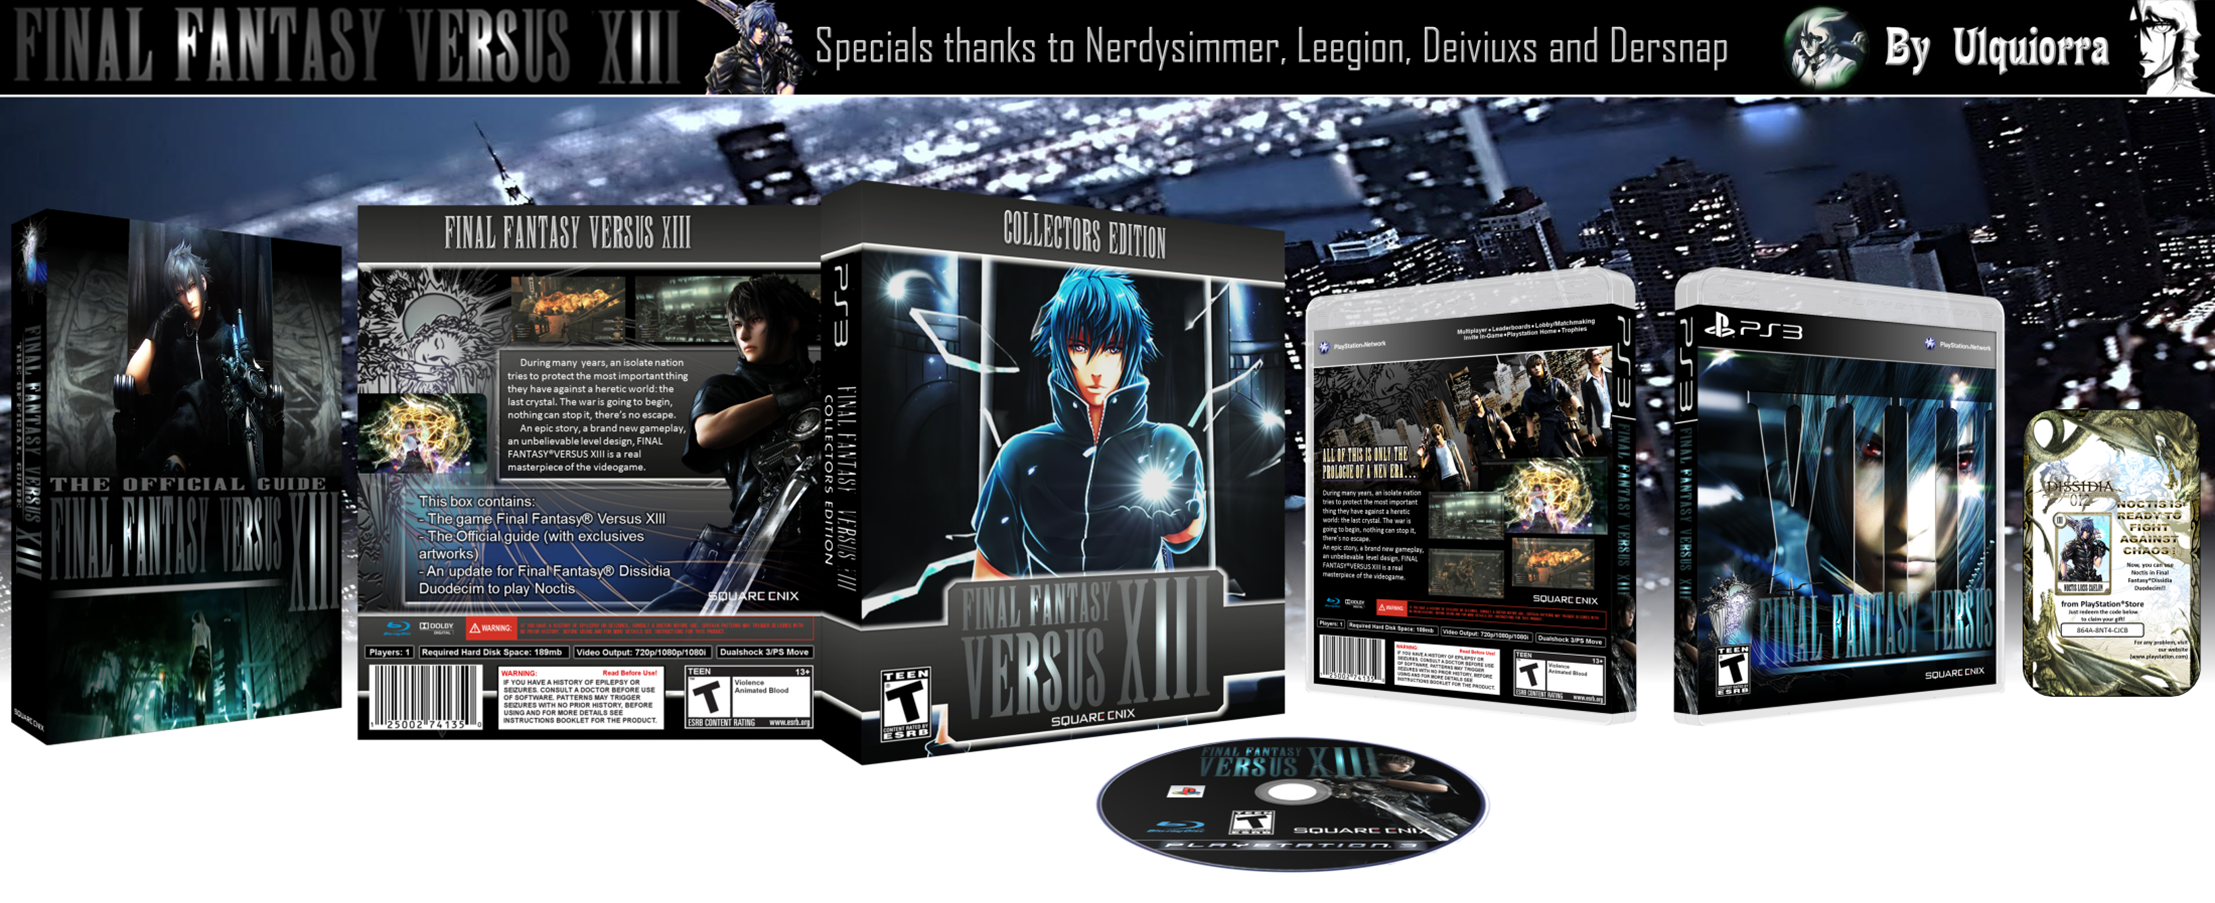 Final Fantasy Versus XIII collectors edition box cover